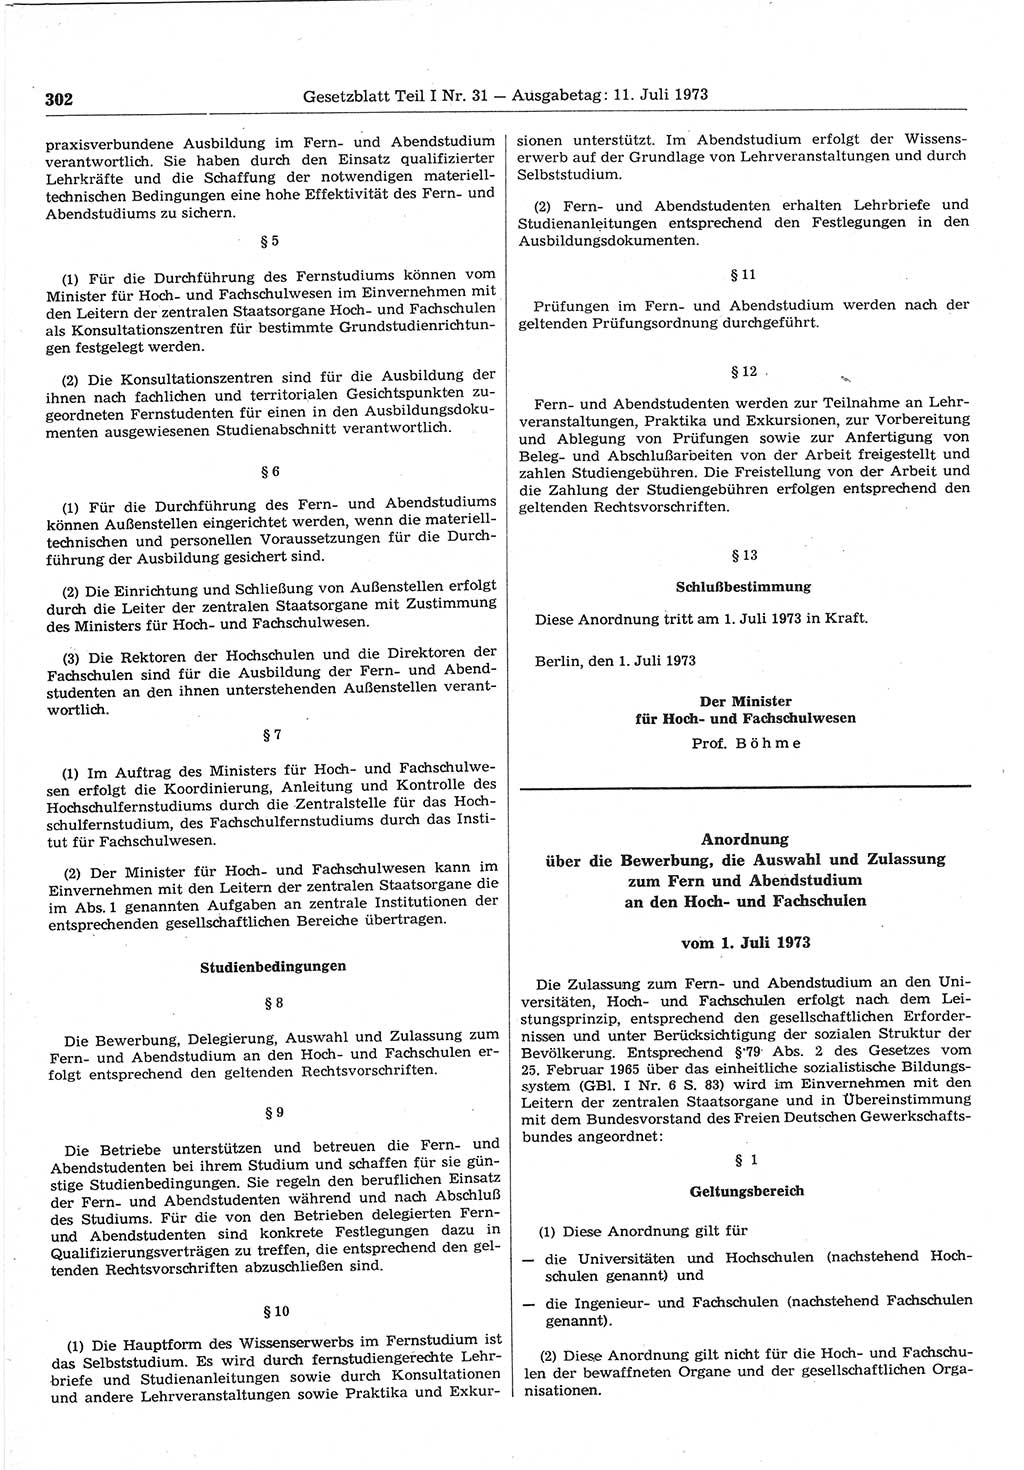 Gesetzblatt (GBl.) der Deutschen Demokratischen Republik (DDR) Teil Ⅰ 1973, Seite 302 (GBl. DDR Ⅰ 1973, S. 302)